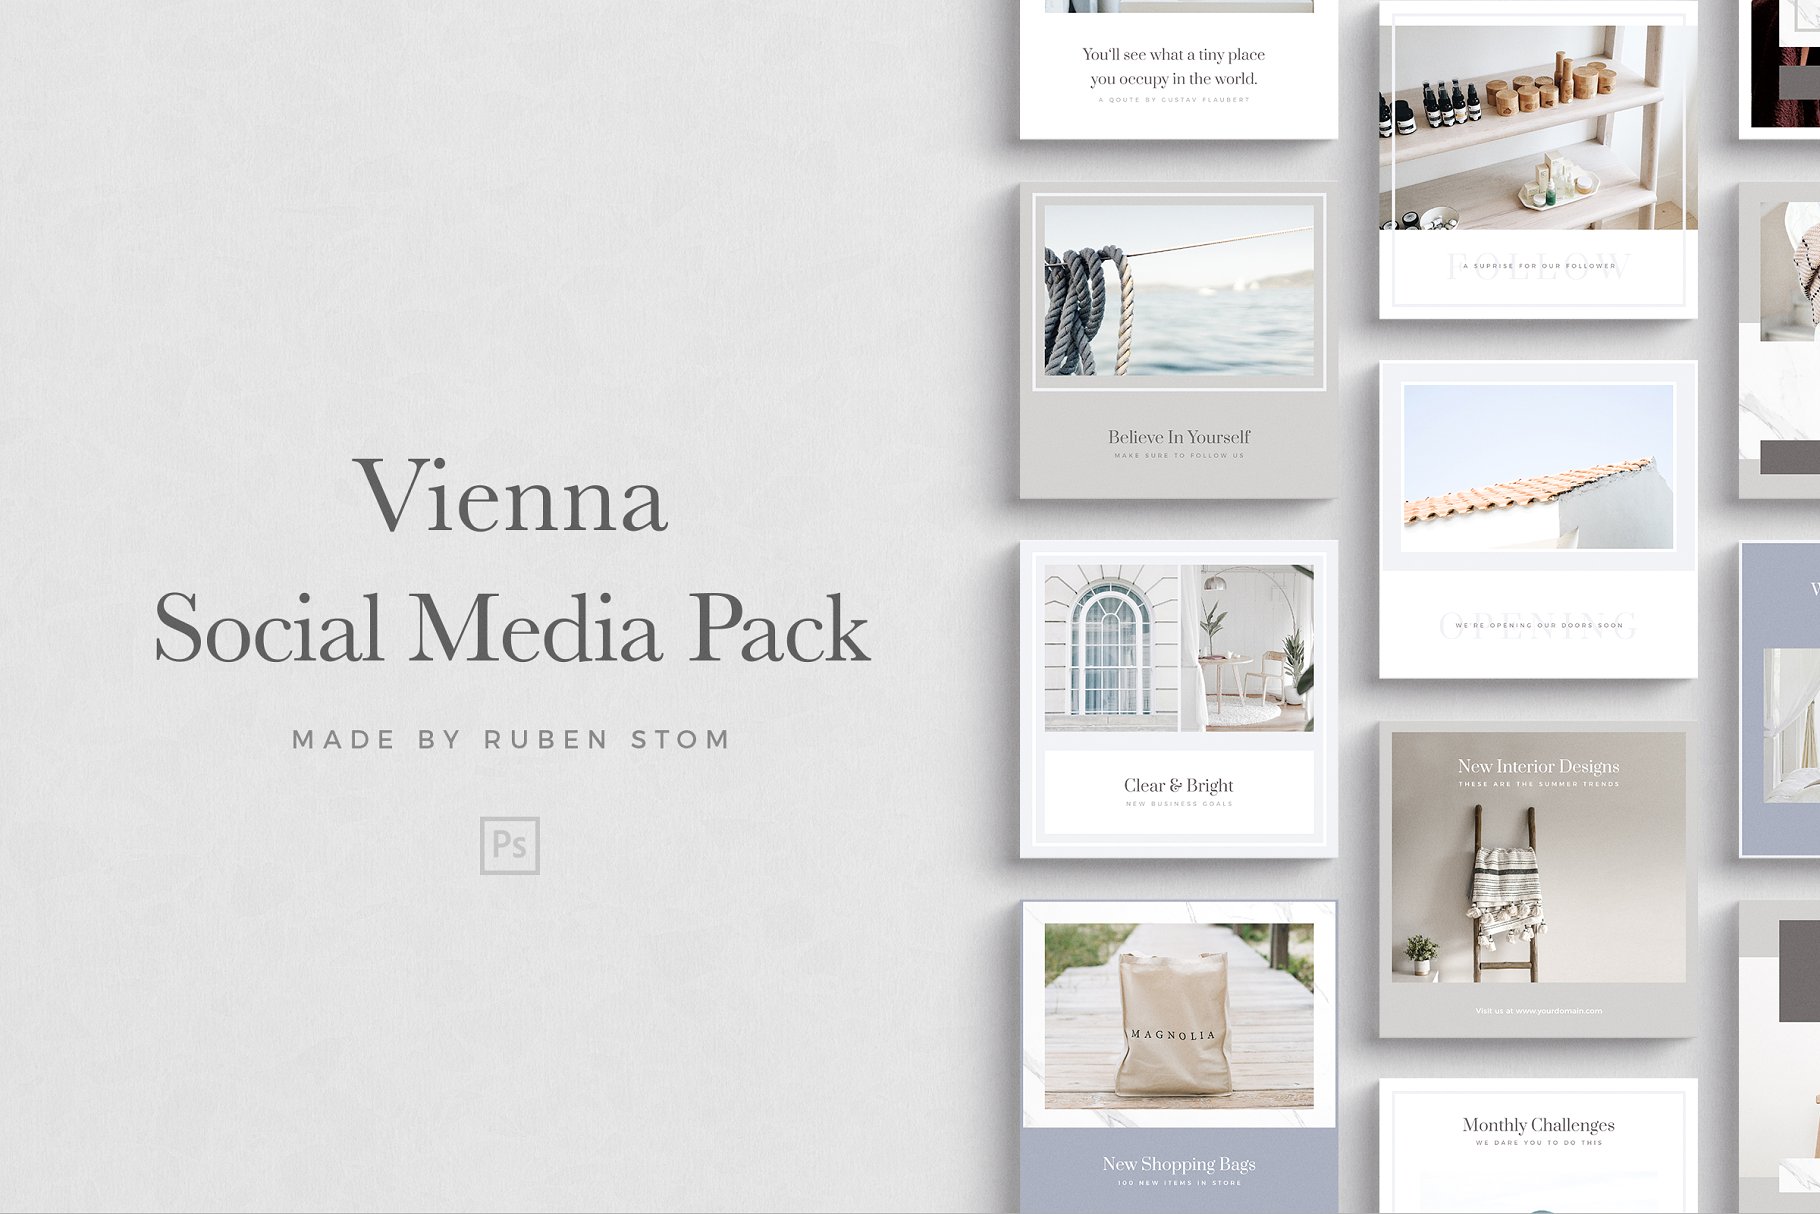 简约风社交媒体贴图设计模板非凡图库精选 Vienna Social Media Pack插图